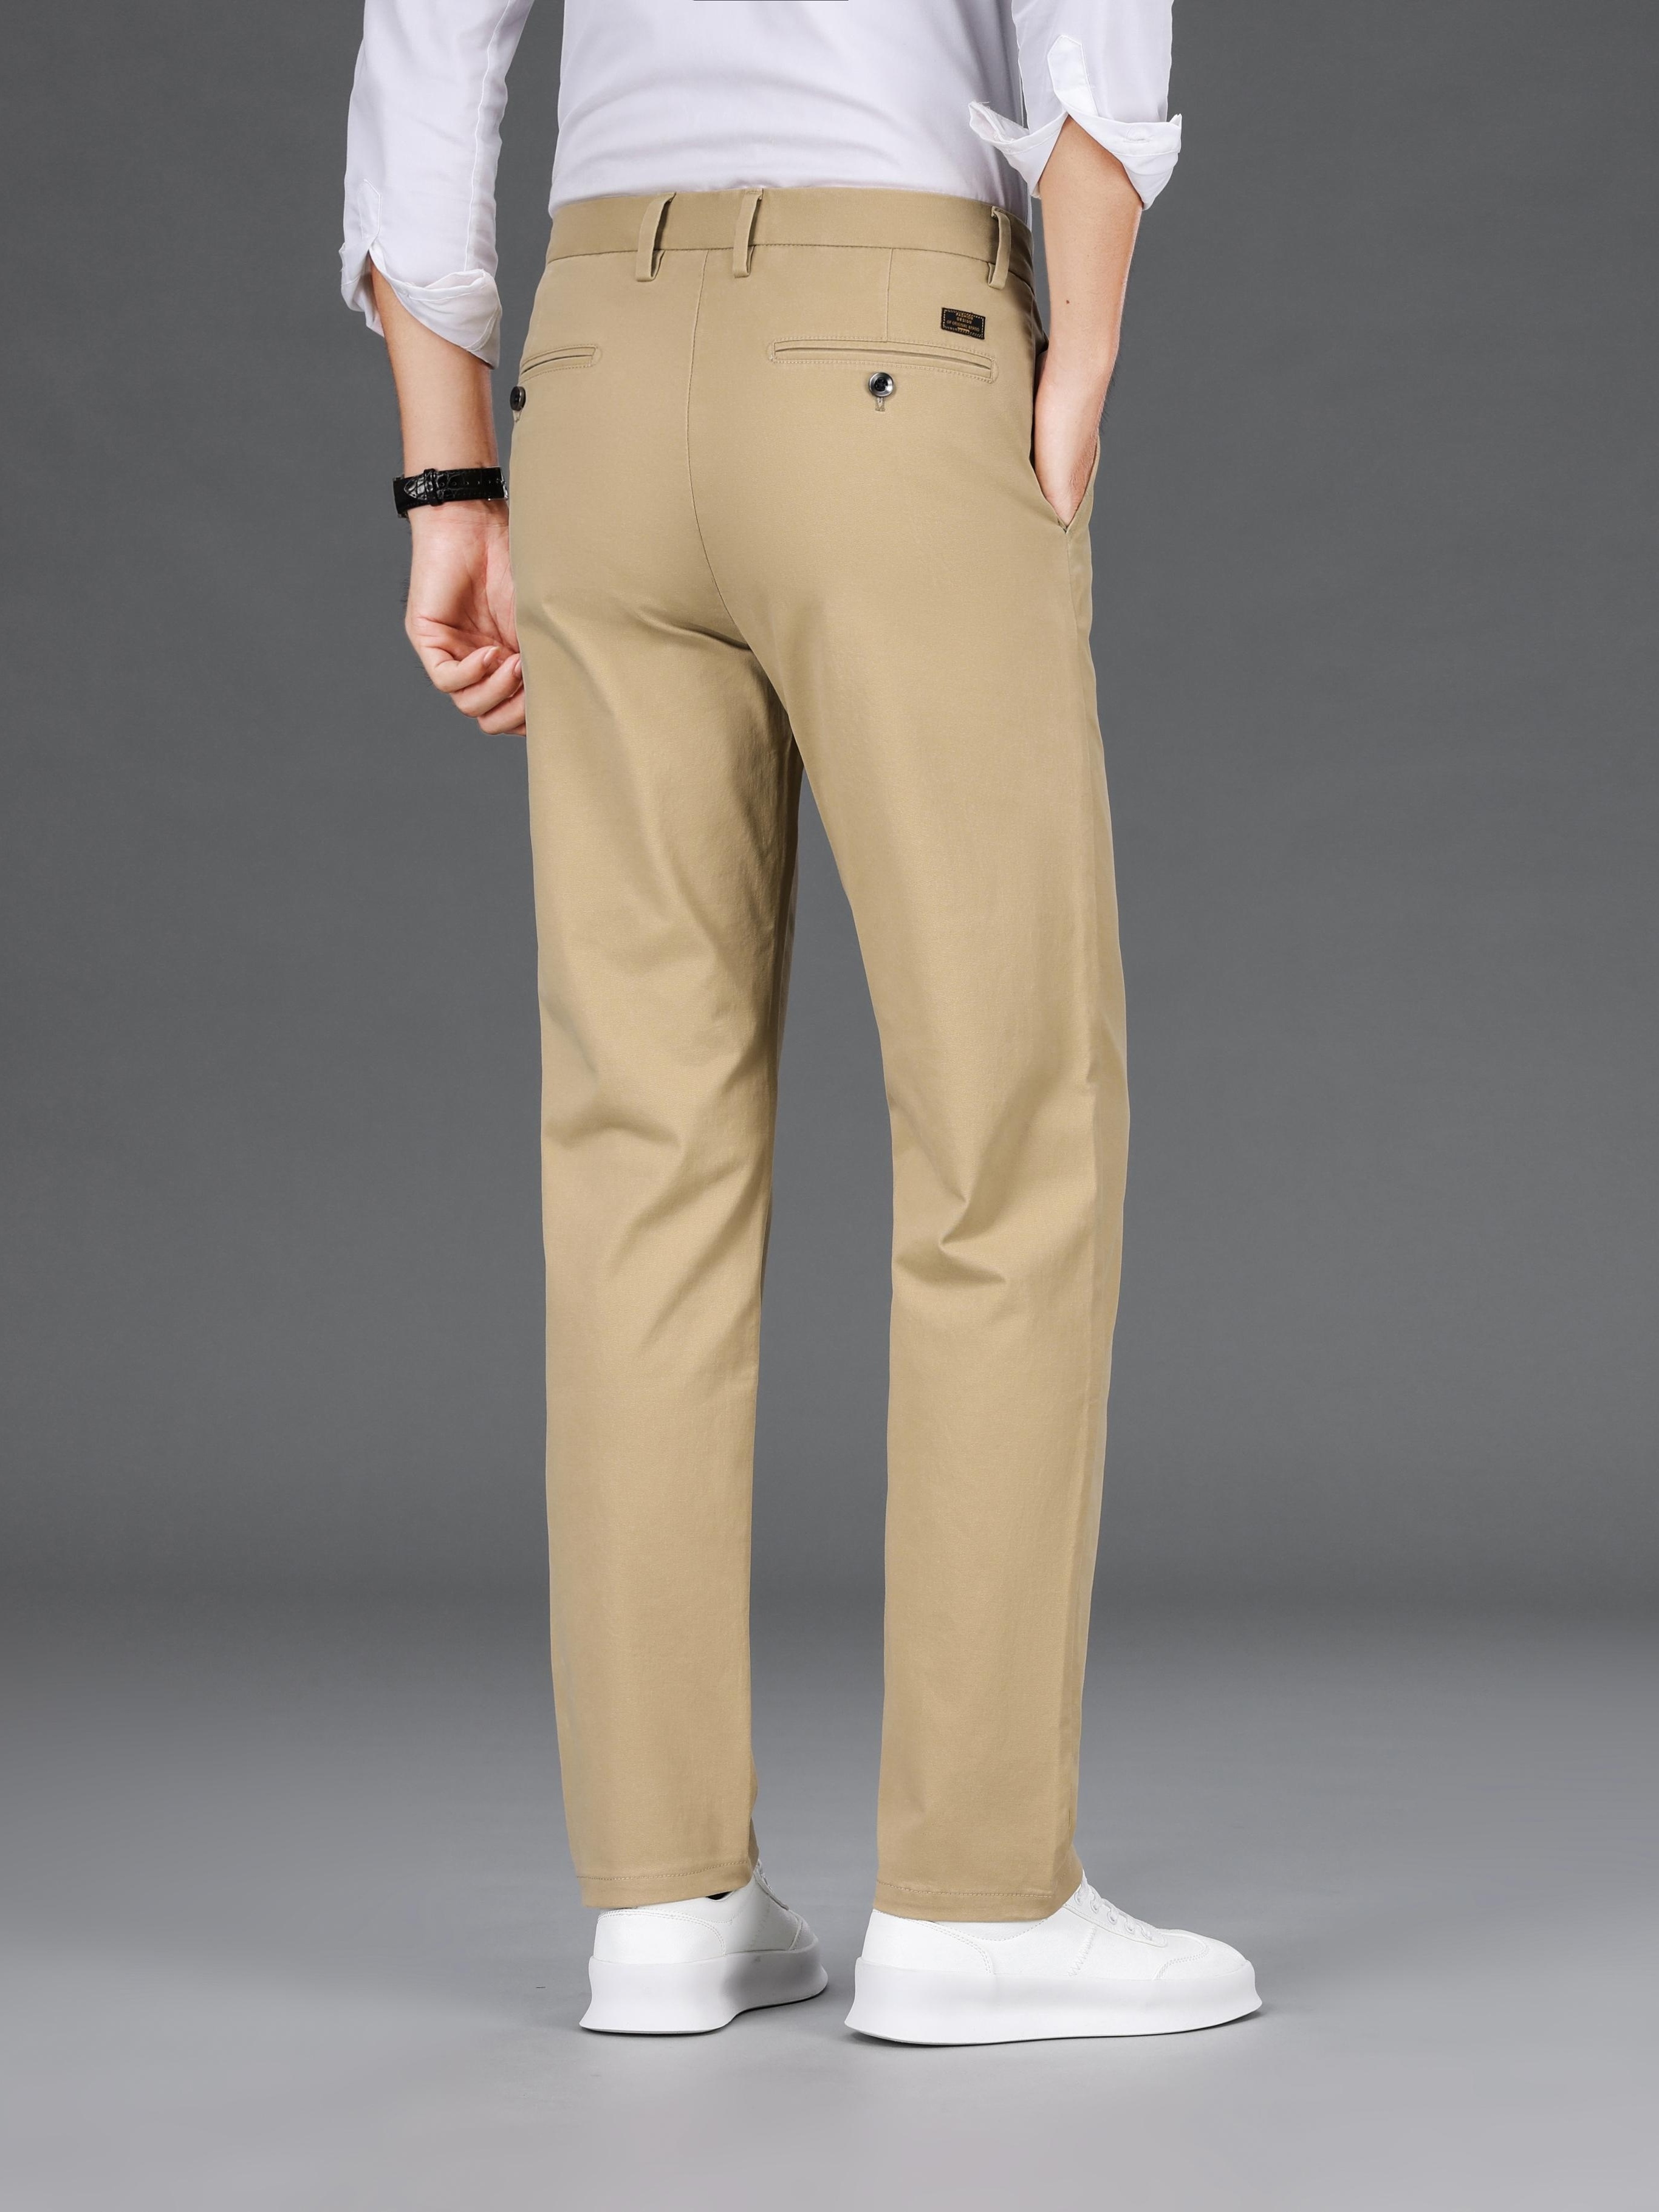 2023 Autumn Men's Suit Casual Pants Business Classic Straight